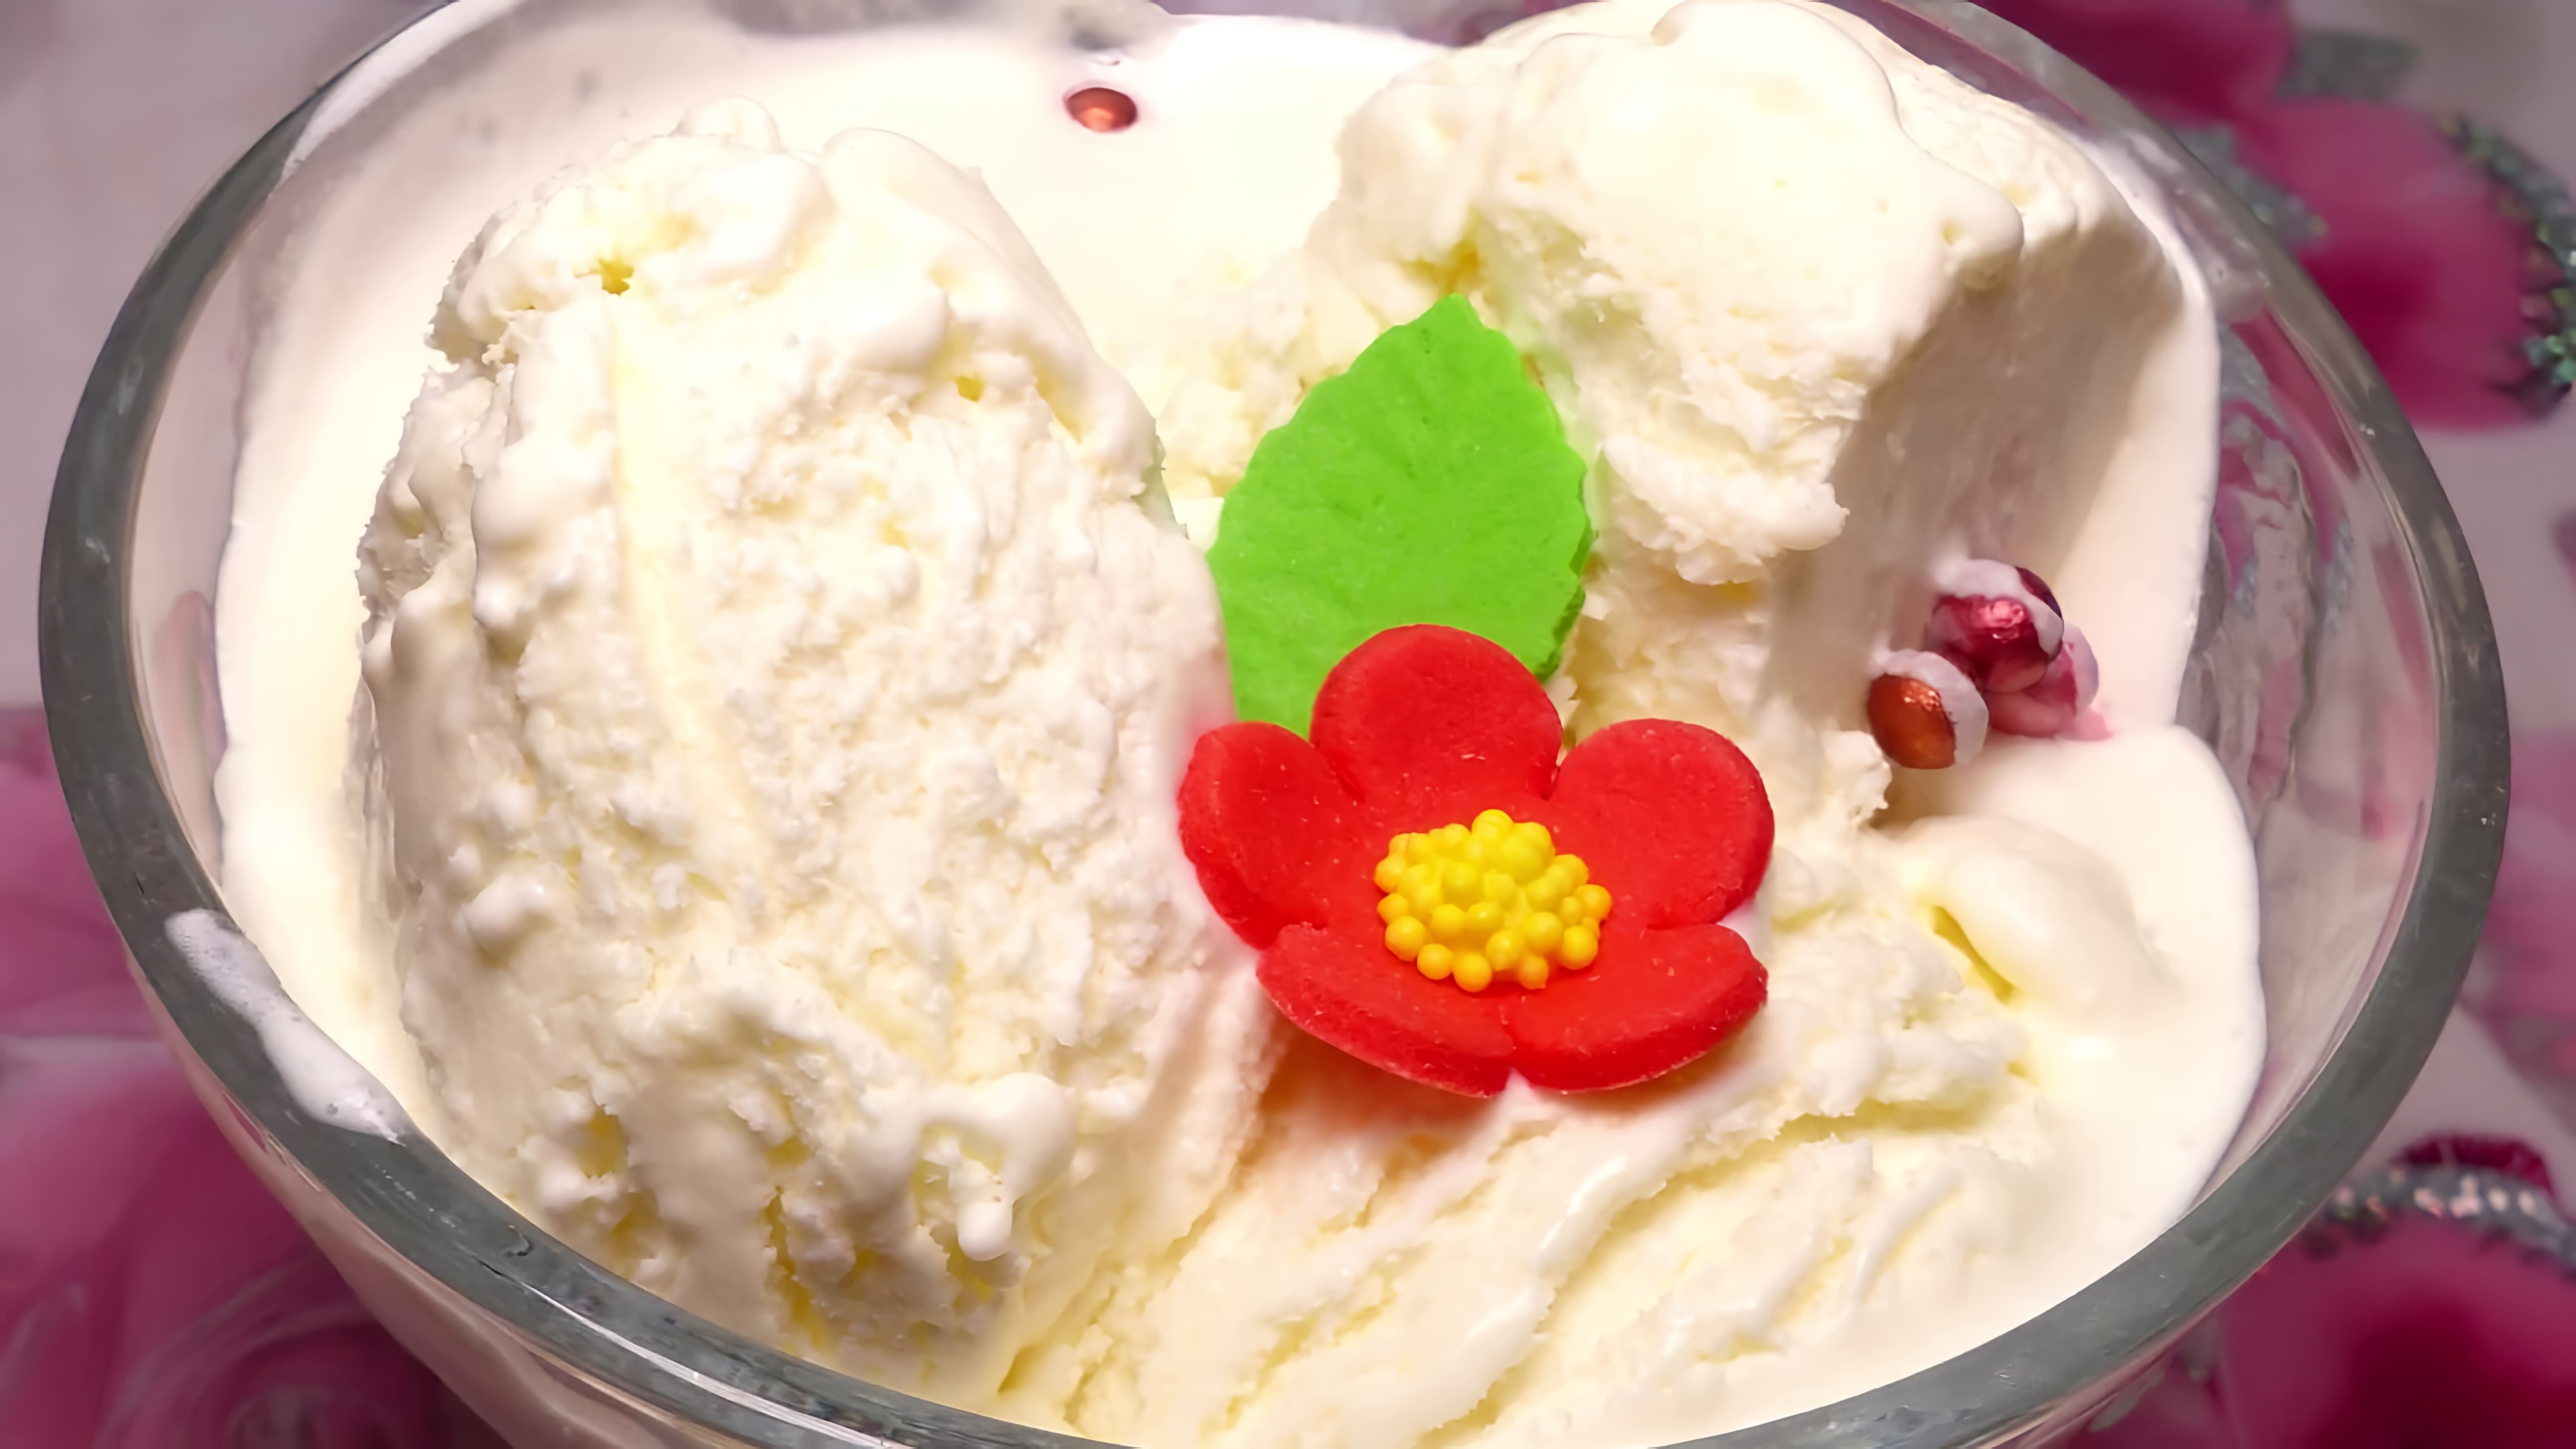 В этом видео демонстрируется рецепт приготовления сливочного мороженого в домашних условиях